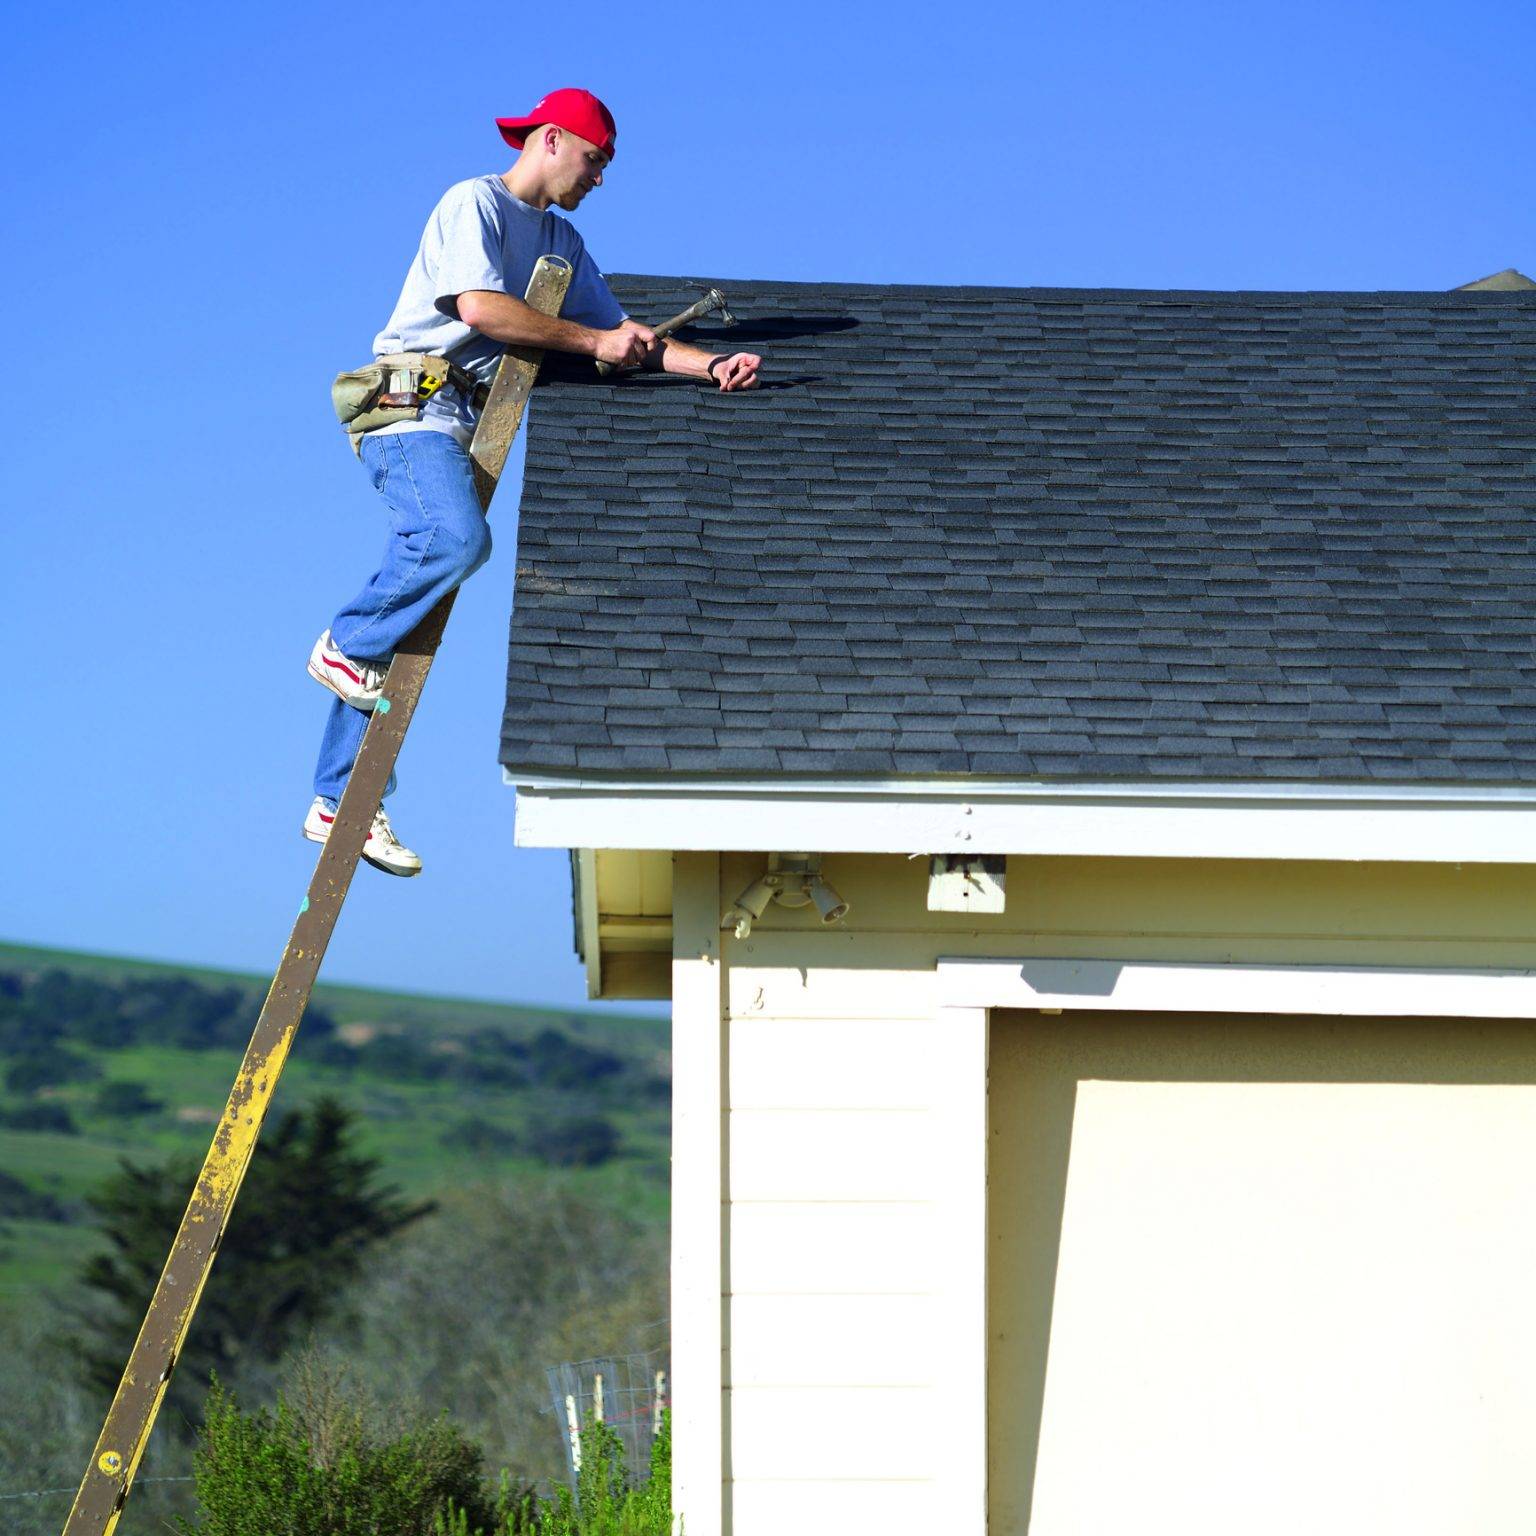 Страховка для работы на крыше для мастера